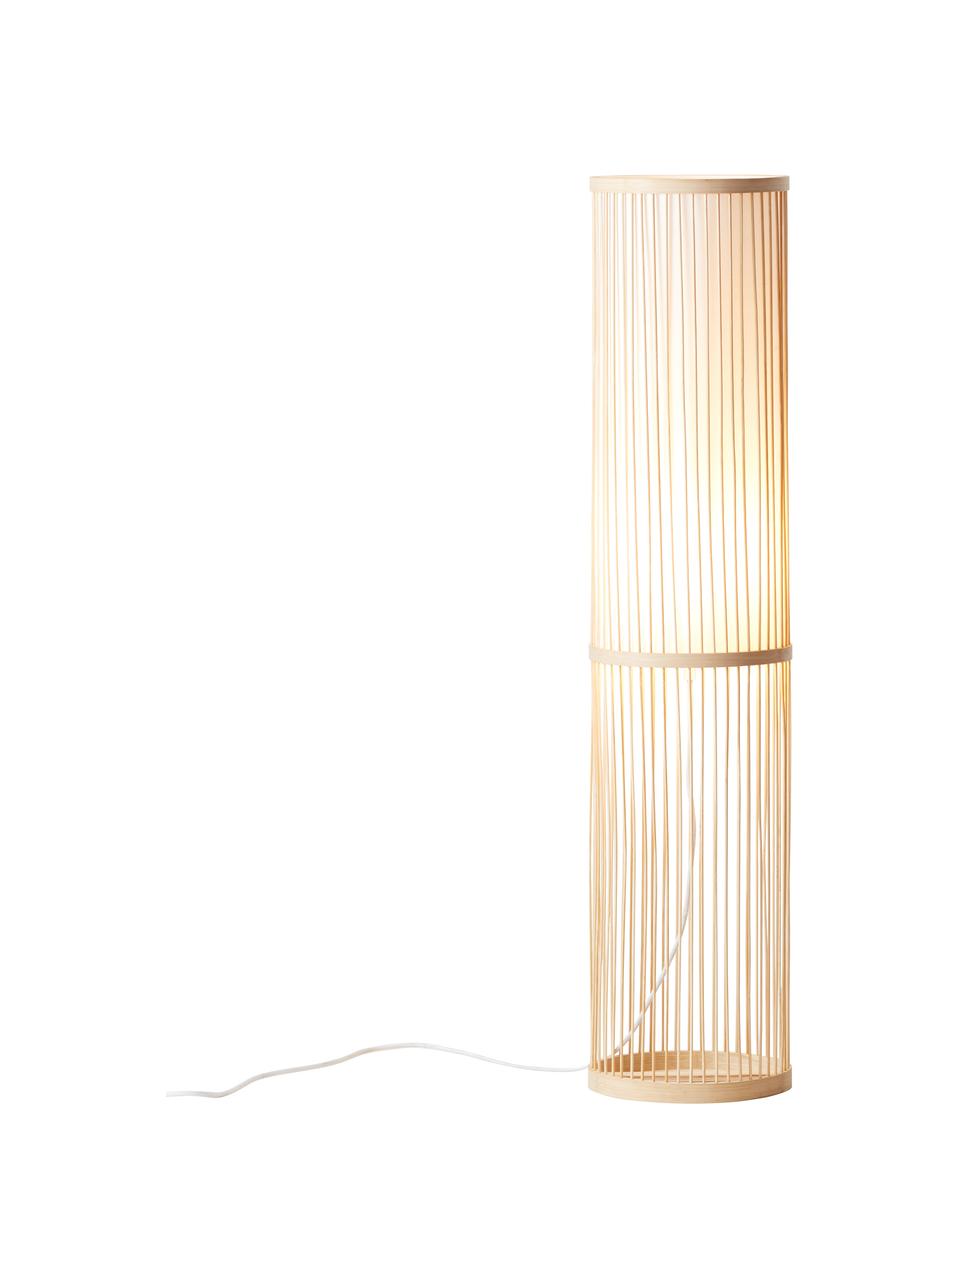 Malé podlahové osvětlení z bambusu Nori, Béžová, Ø 20 cm, V 91 cm